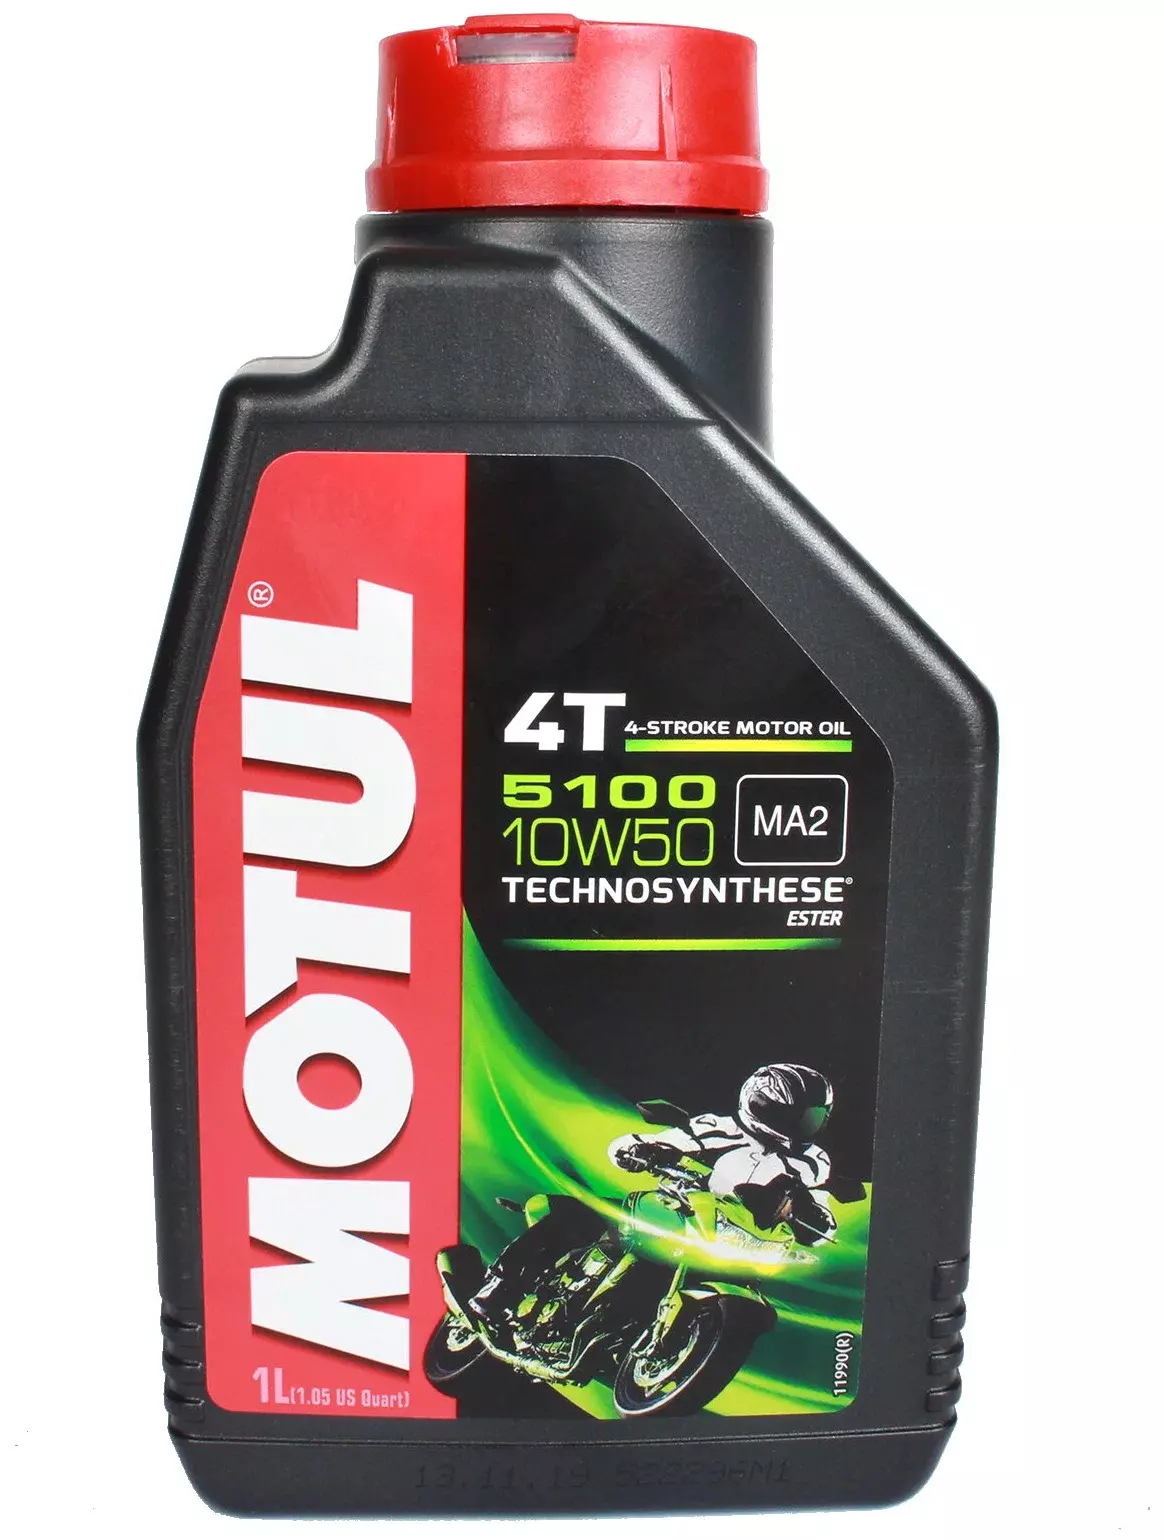 Моторное масло Motul 5100 4T 10W50 для мотоциклов 1л